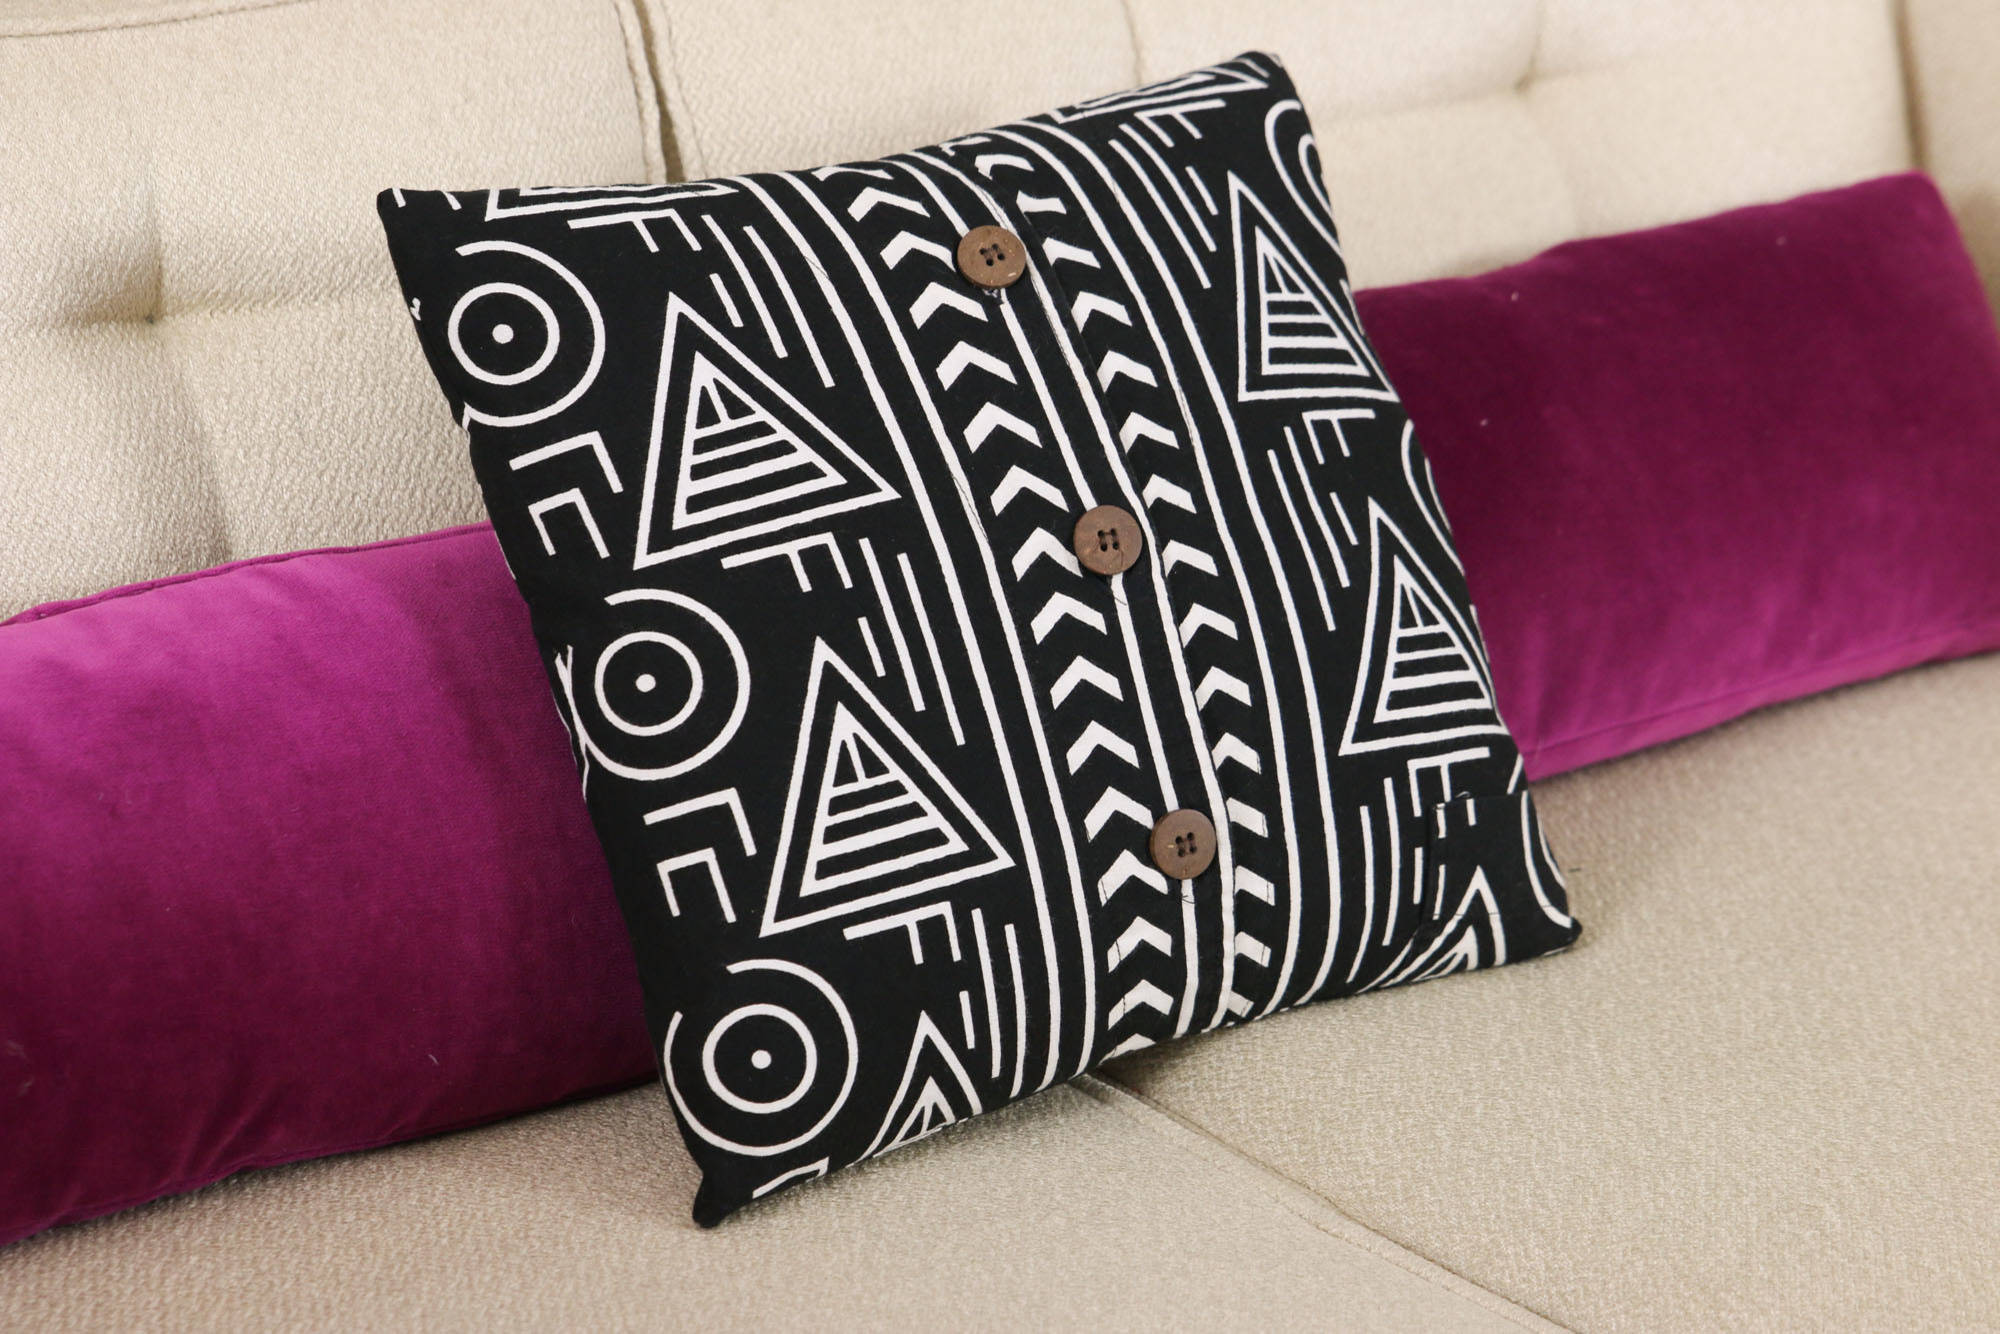 Оригинальные диванные подушки своими руками: 15 идей как сшить наволочку наподушку